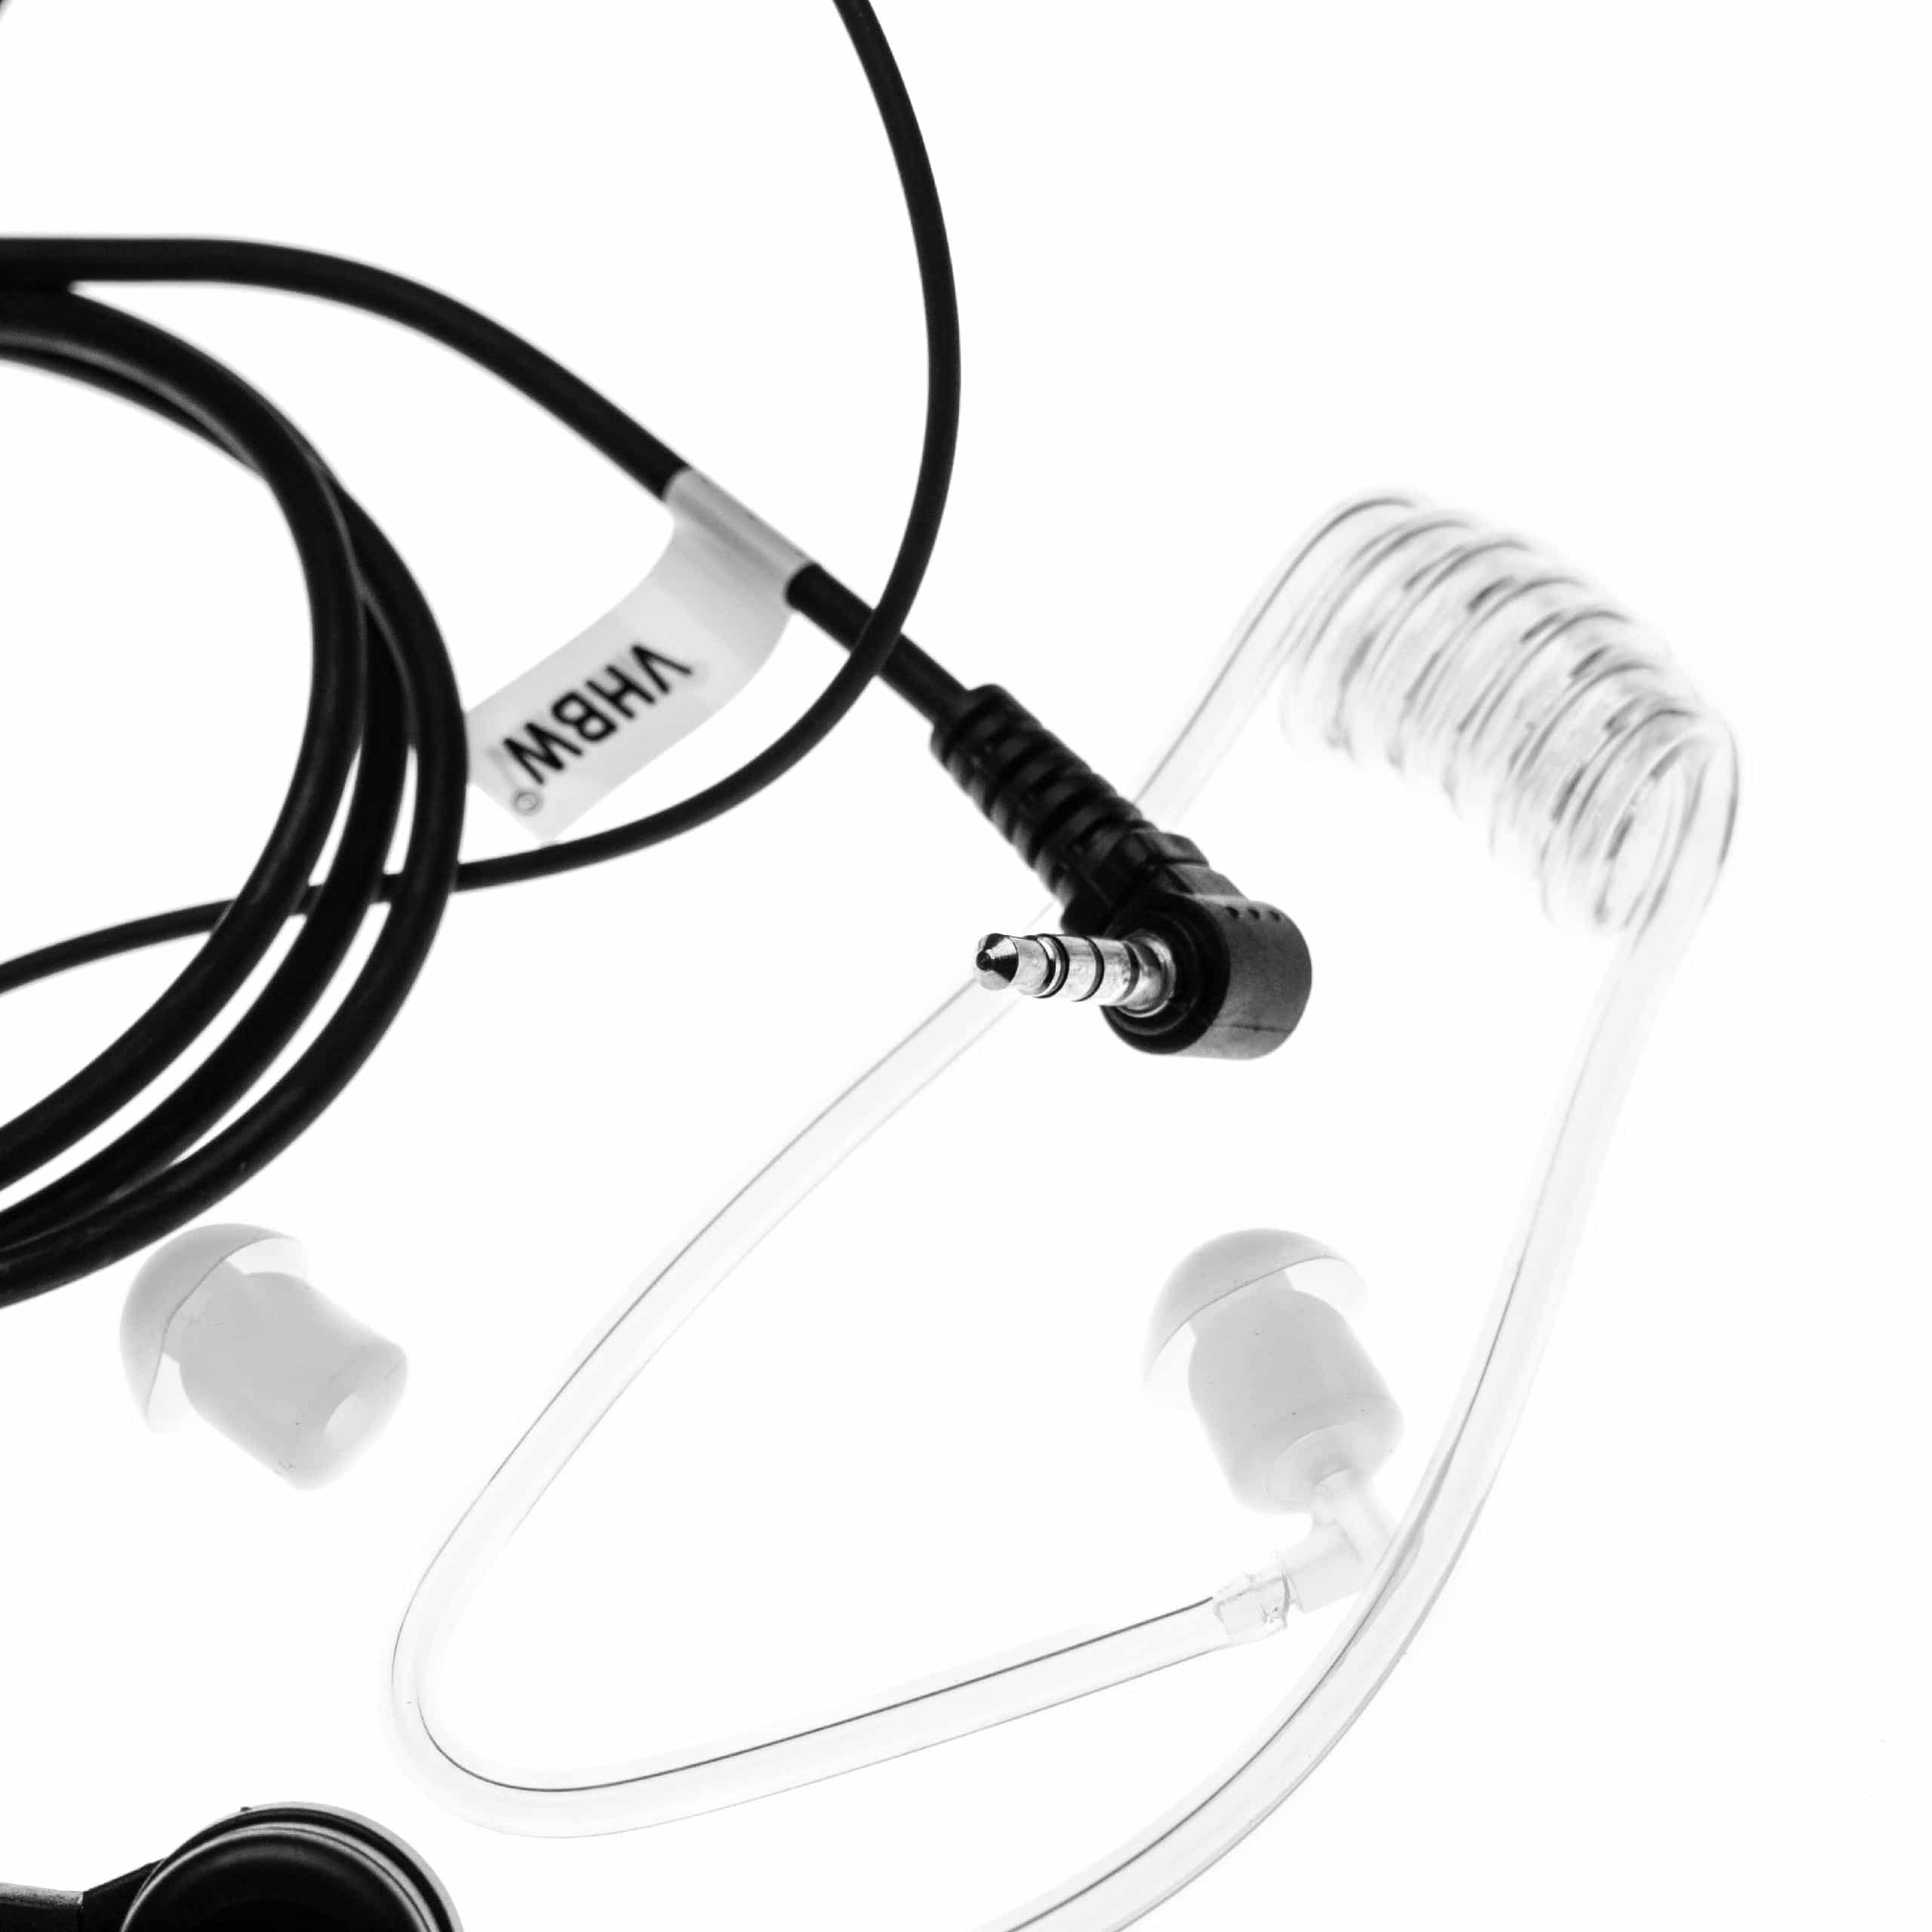 Auriculares para transceptor Yaesu VX-2R + micrófono push-to-talk + soporte clip + tubo acústico transparente